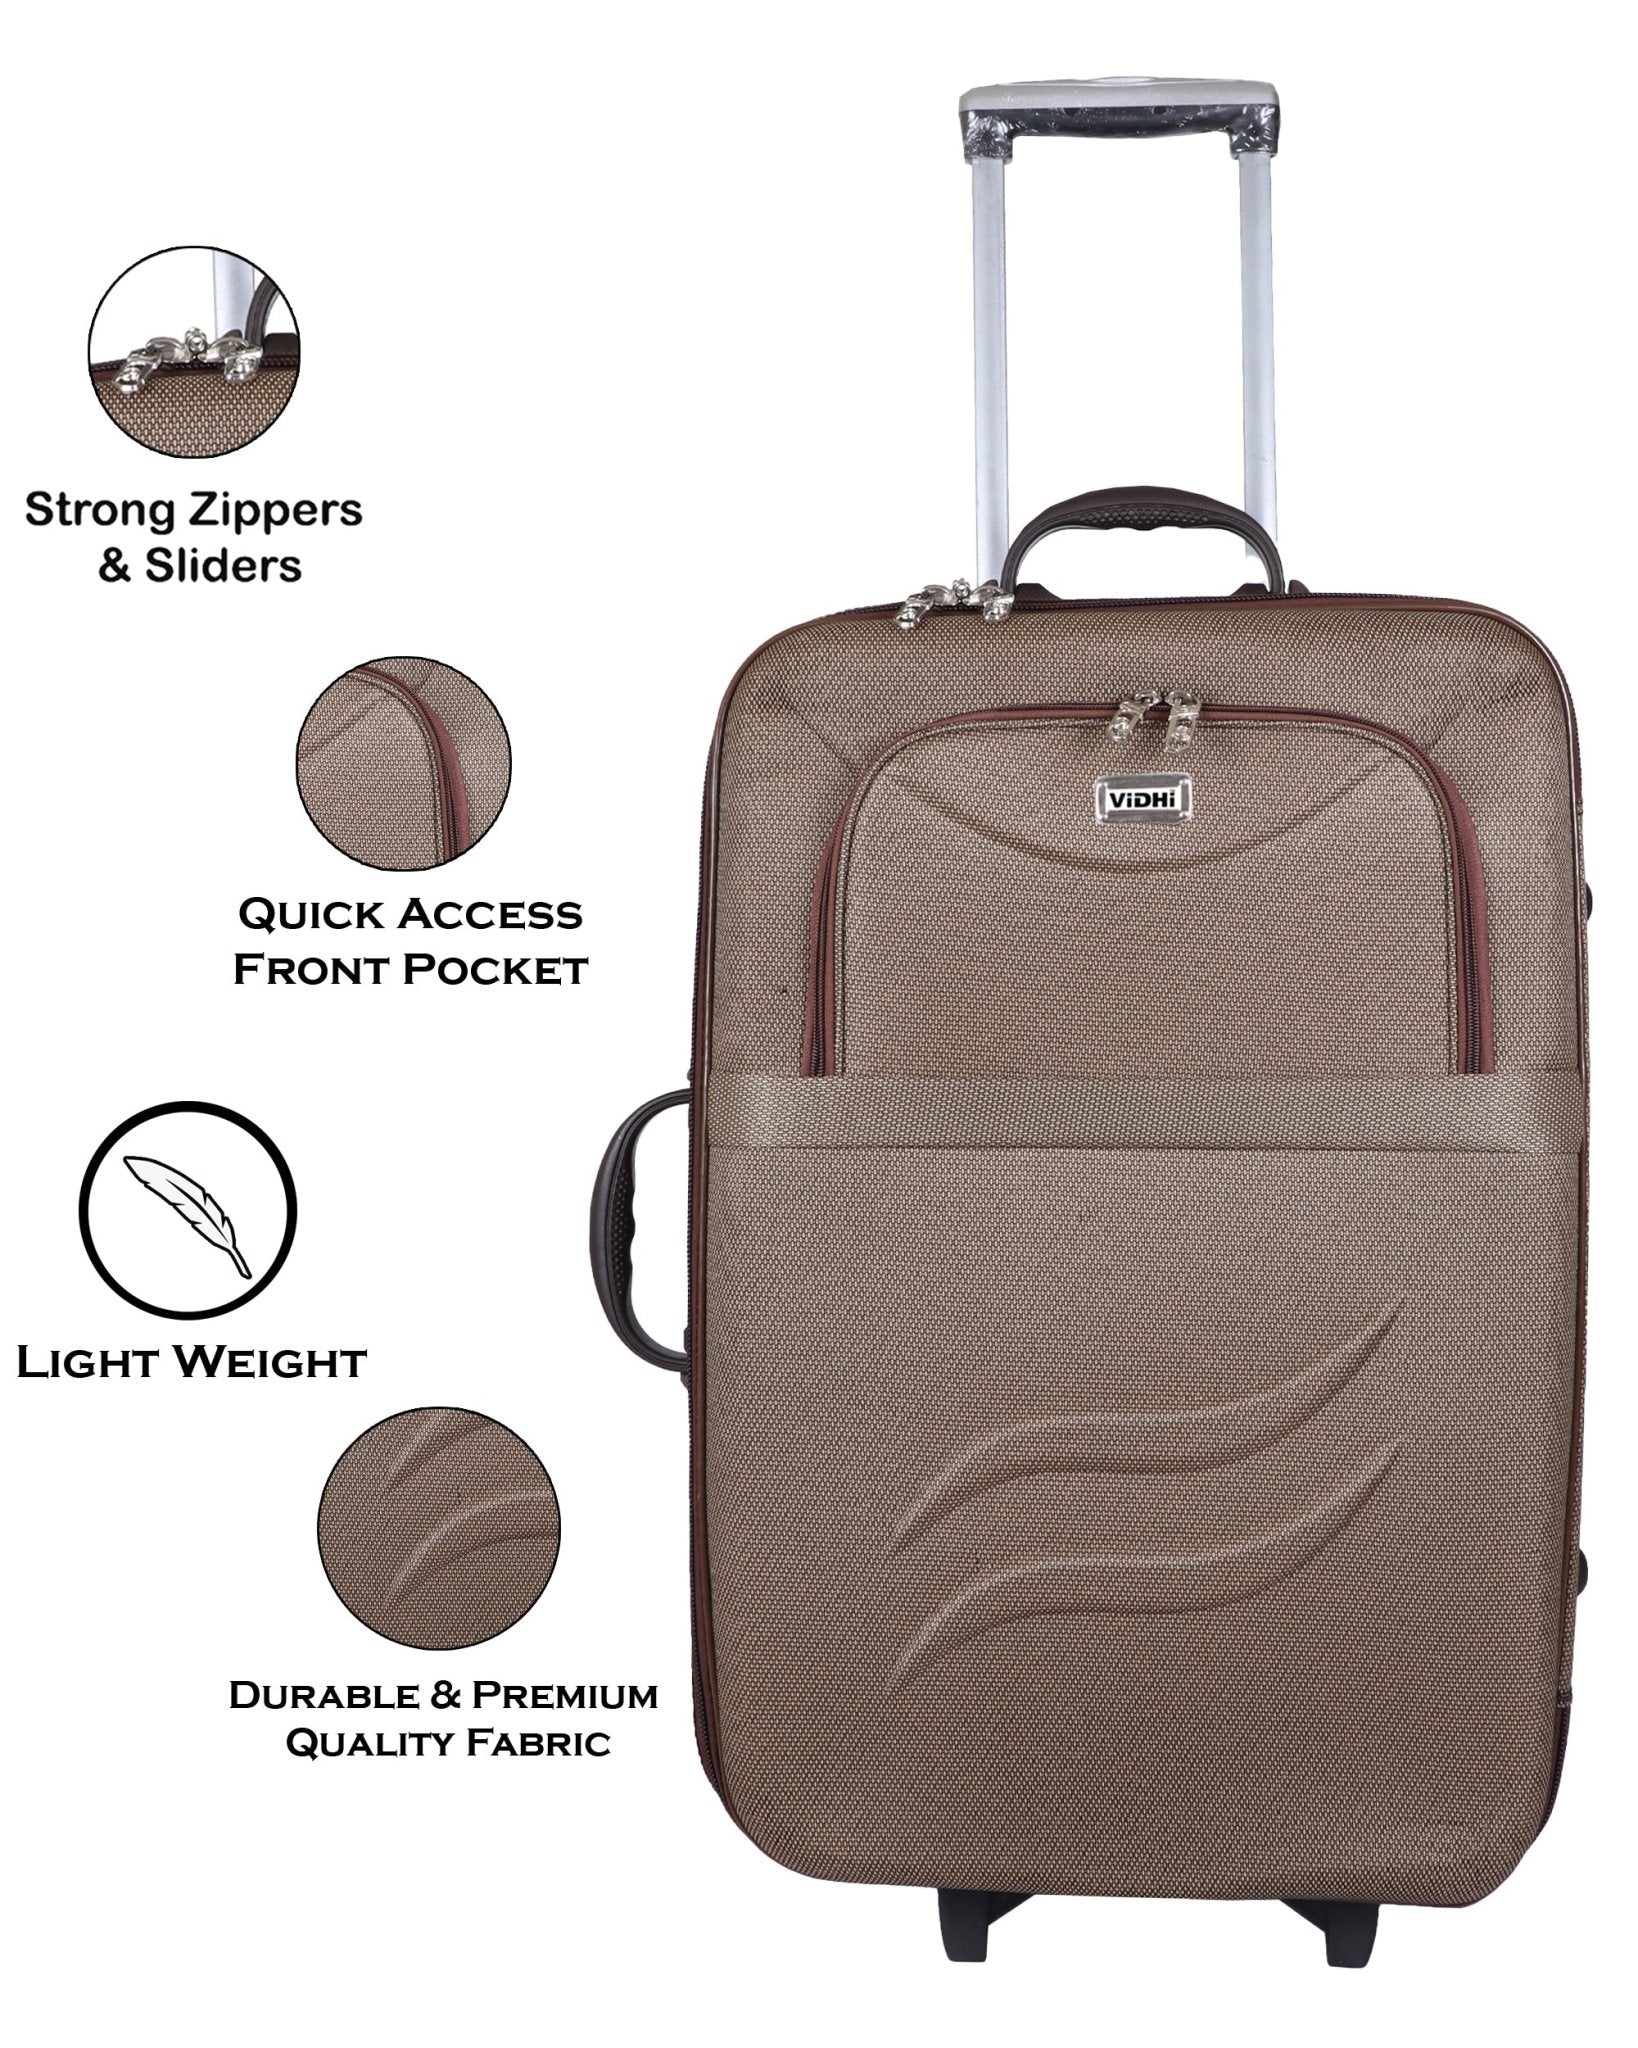 Teal Blue Trolley Bag | 65 CM Travel Luggage - Buy Trolley Bags & Travel Luggage  Online - Arrival Luggage